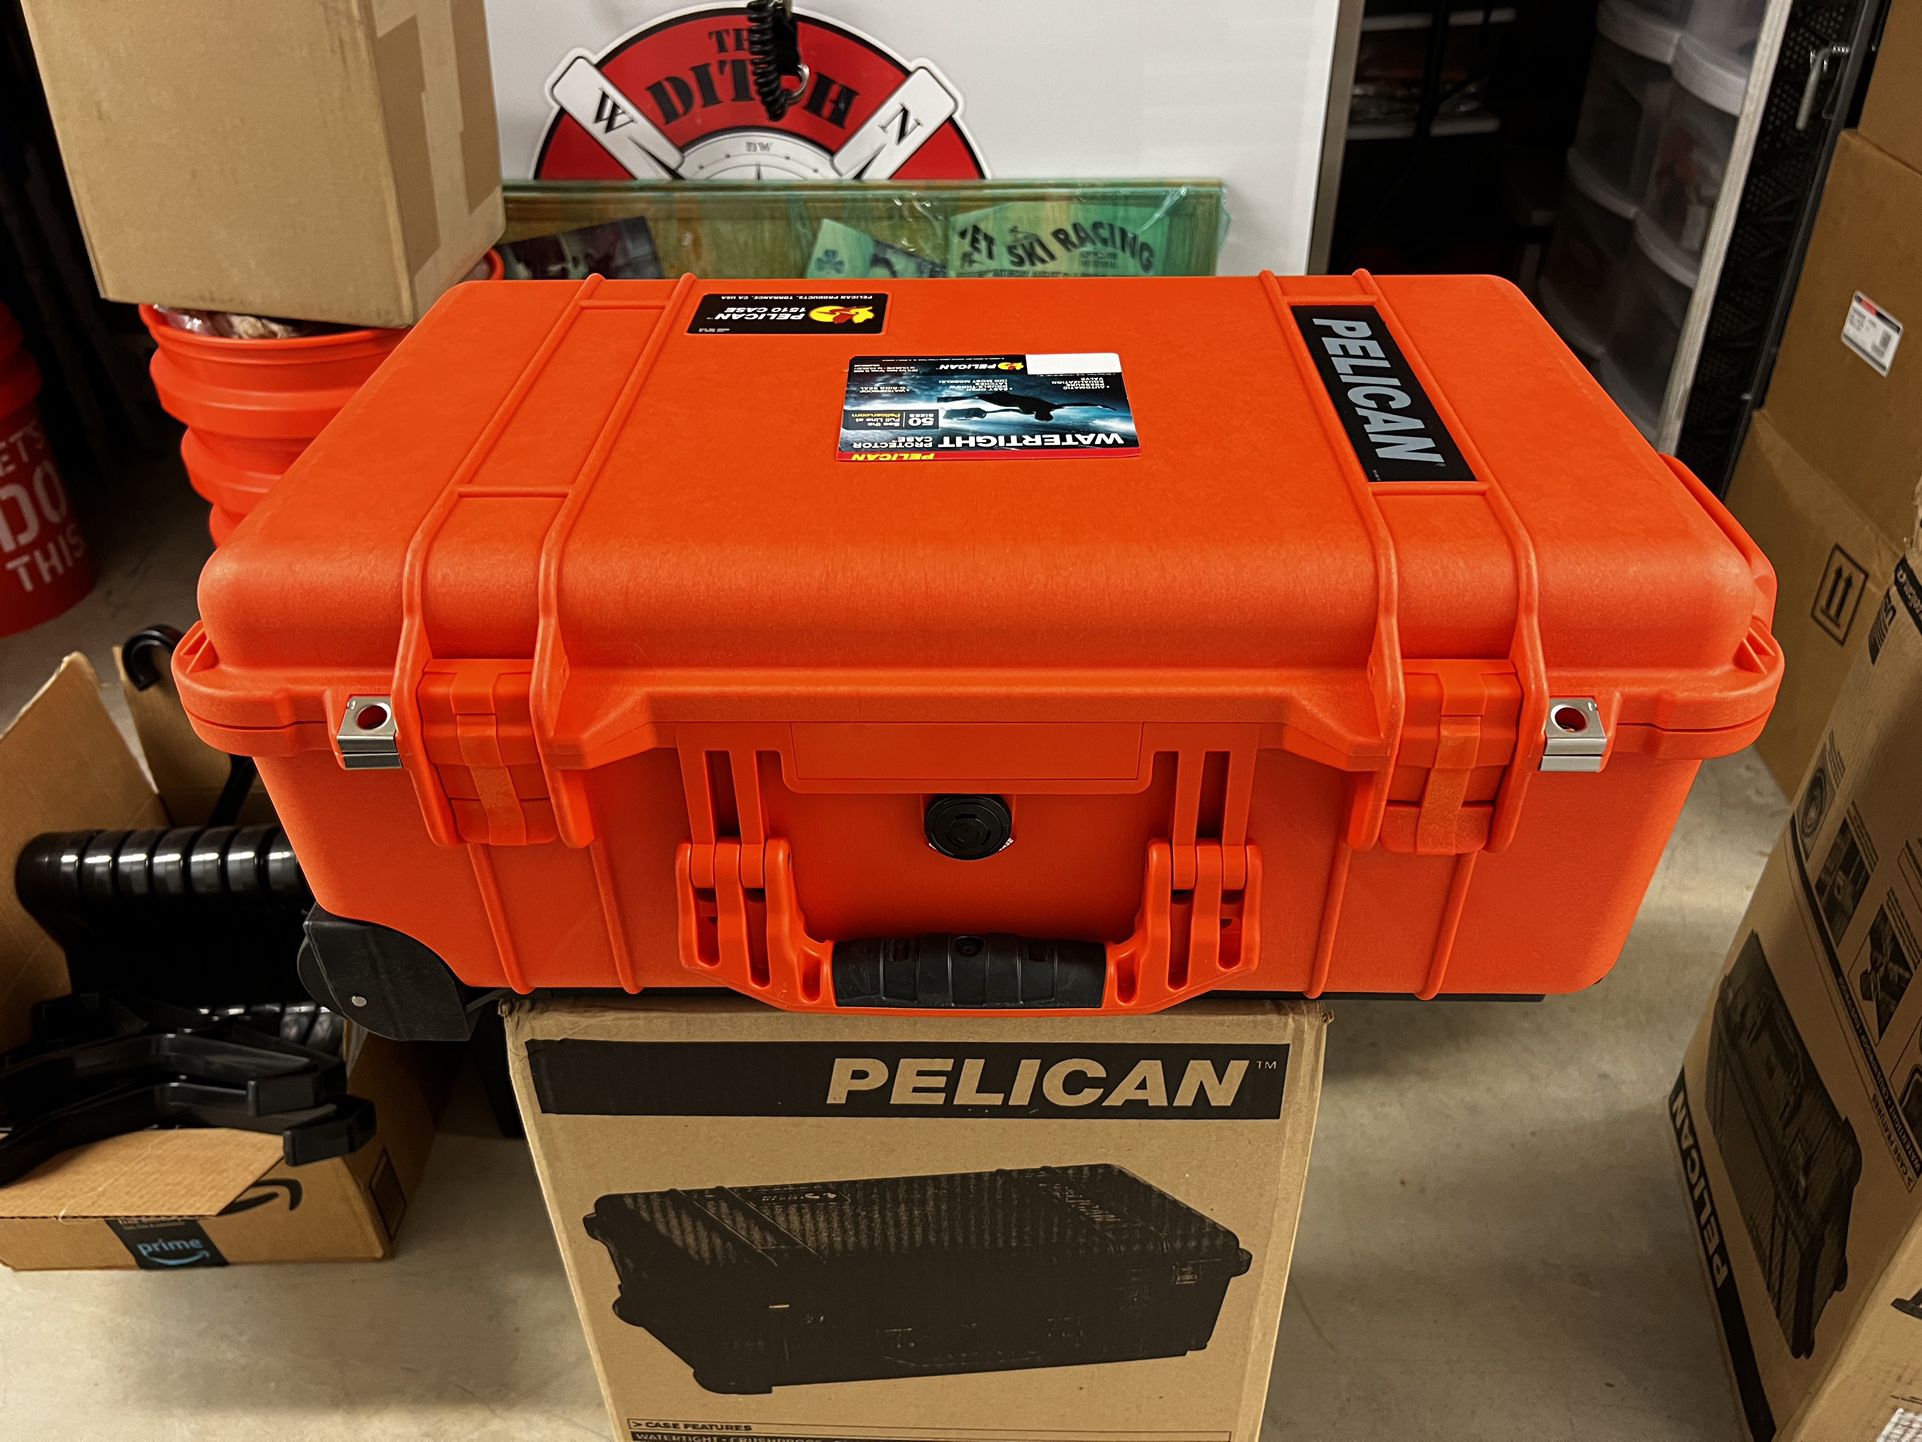 Pelican Case Model # 1510